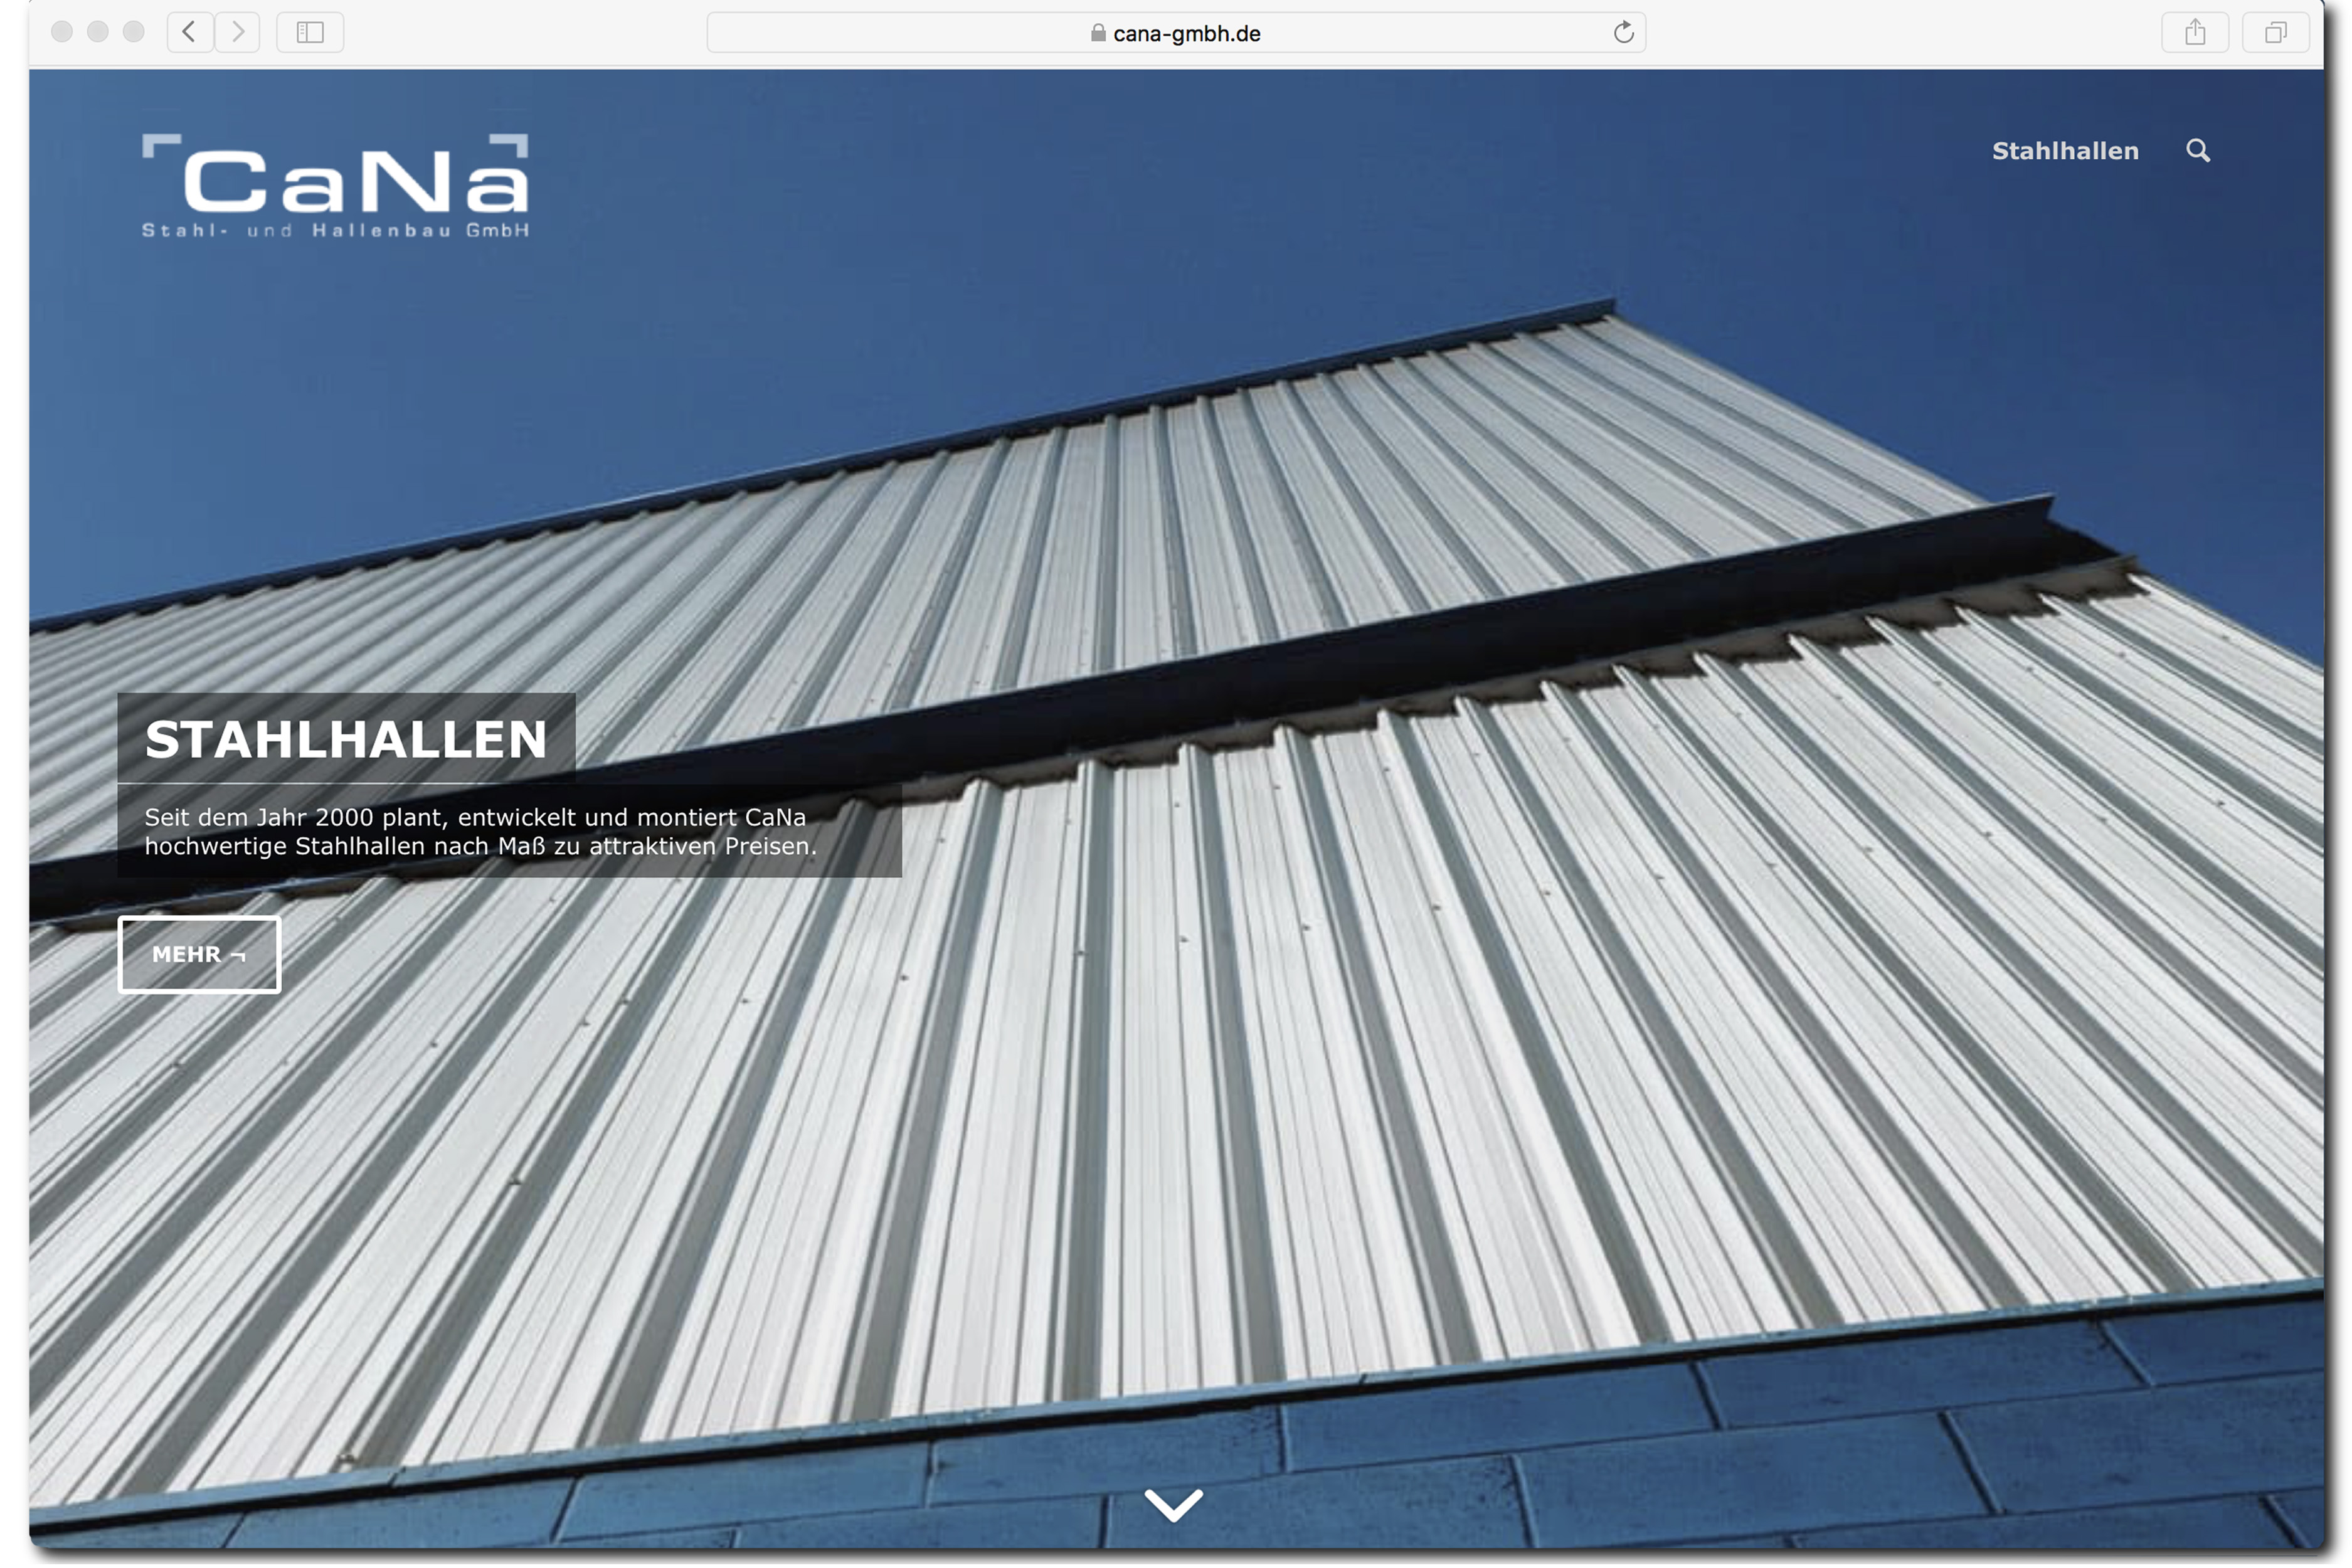 Startseite Webdesign CaNa Stahl- und Hallenbau - gestaltet von finck [+] rau, grafikdesign in Karlsruhe